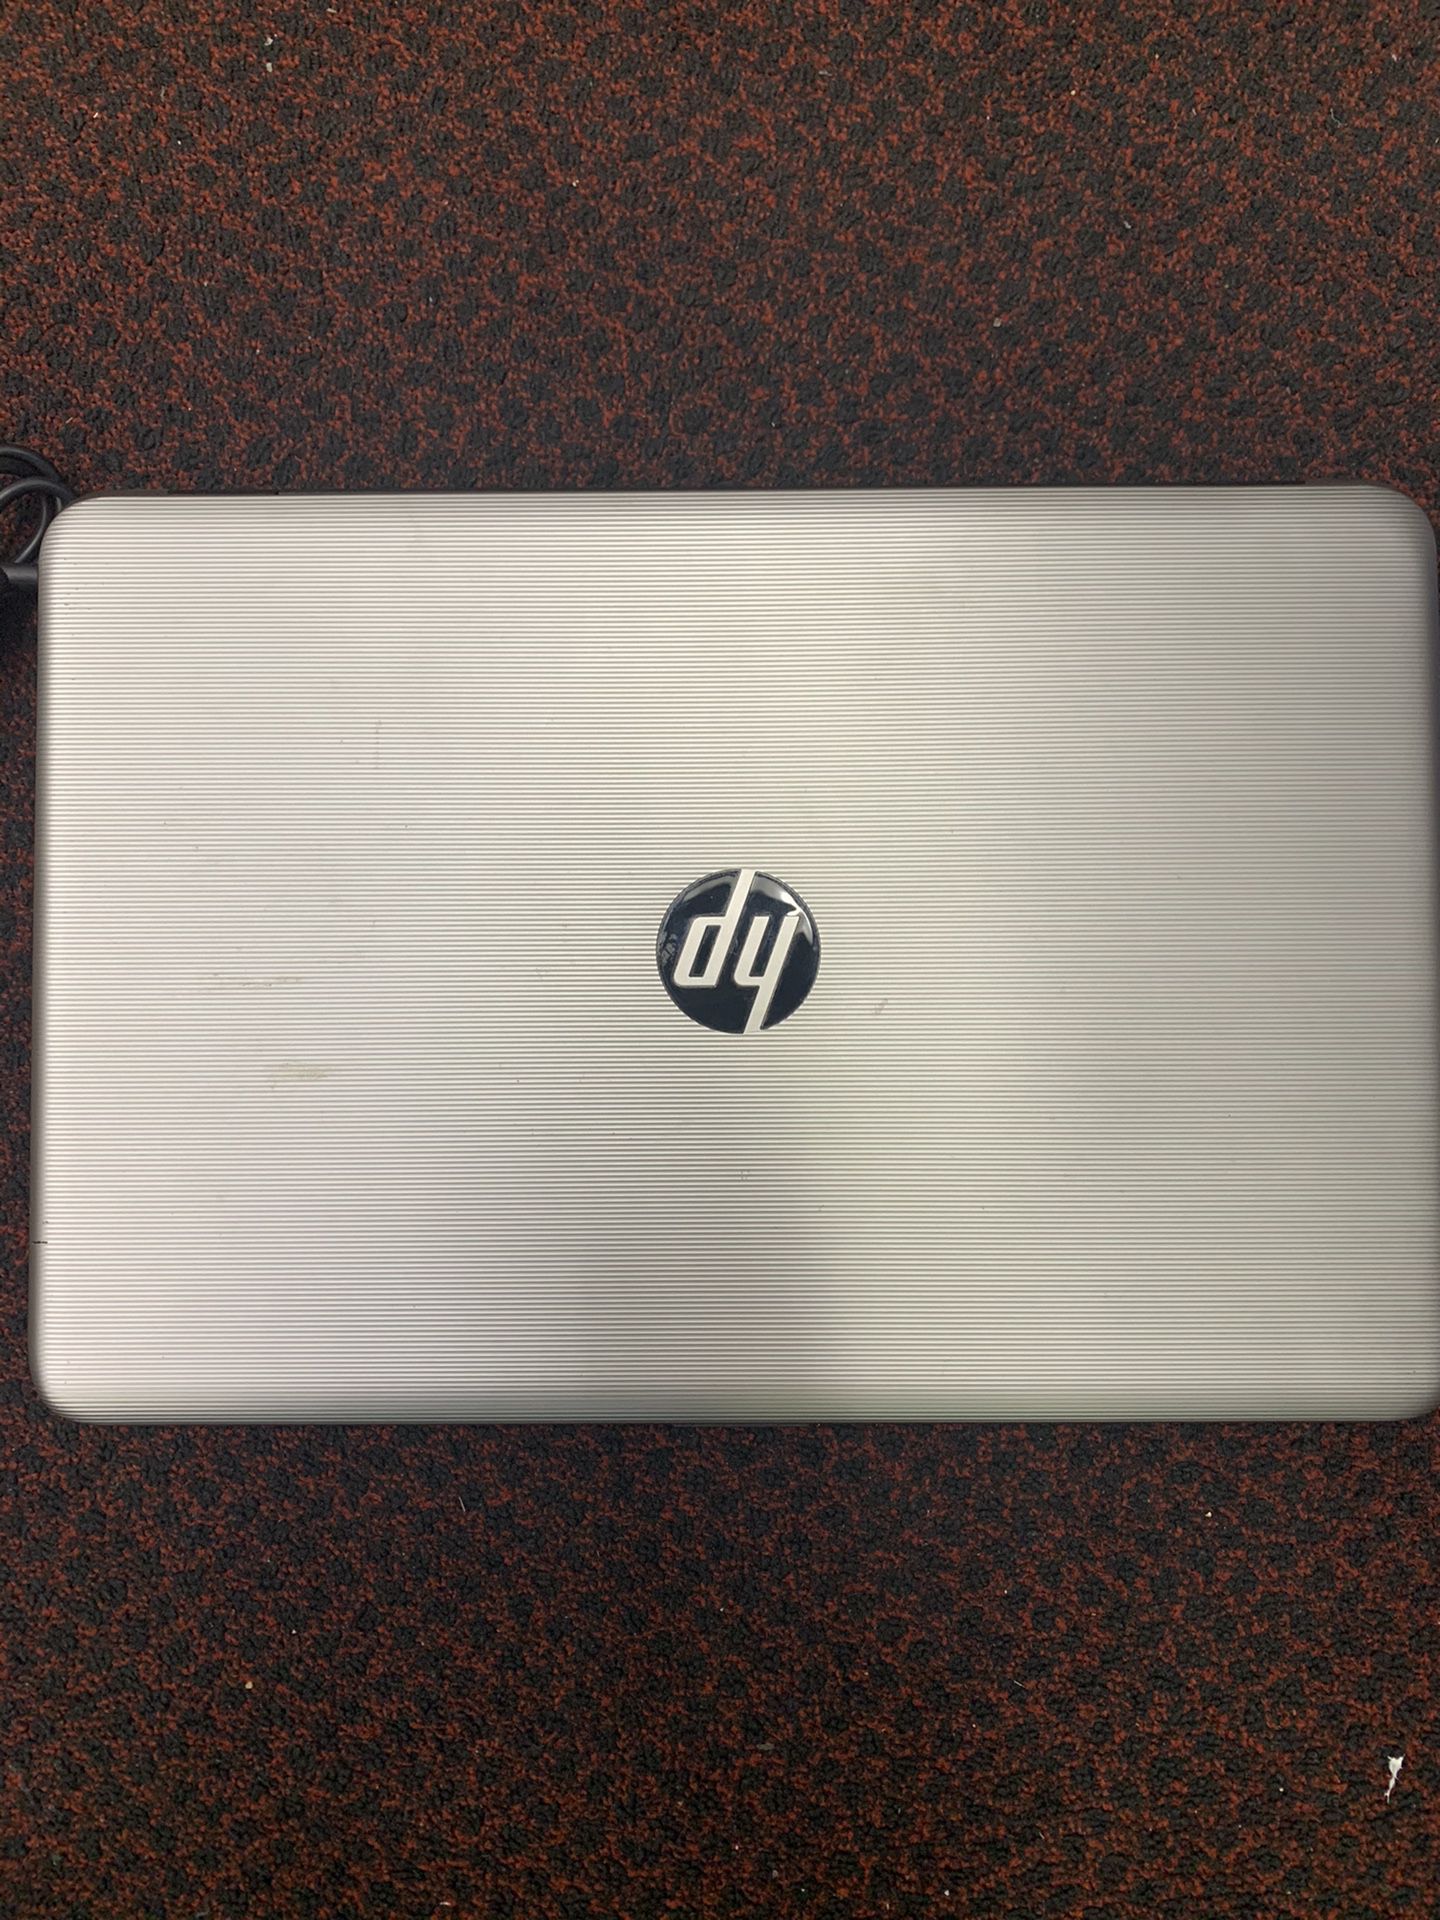 HP laptop (notebook)